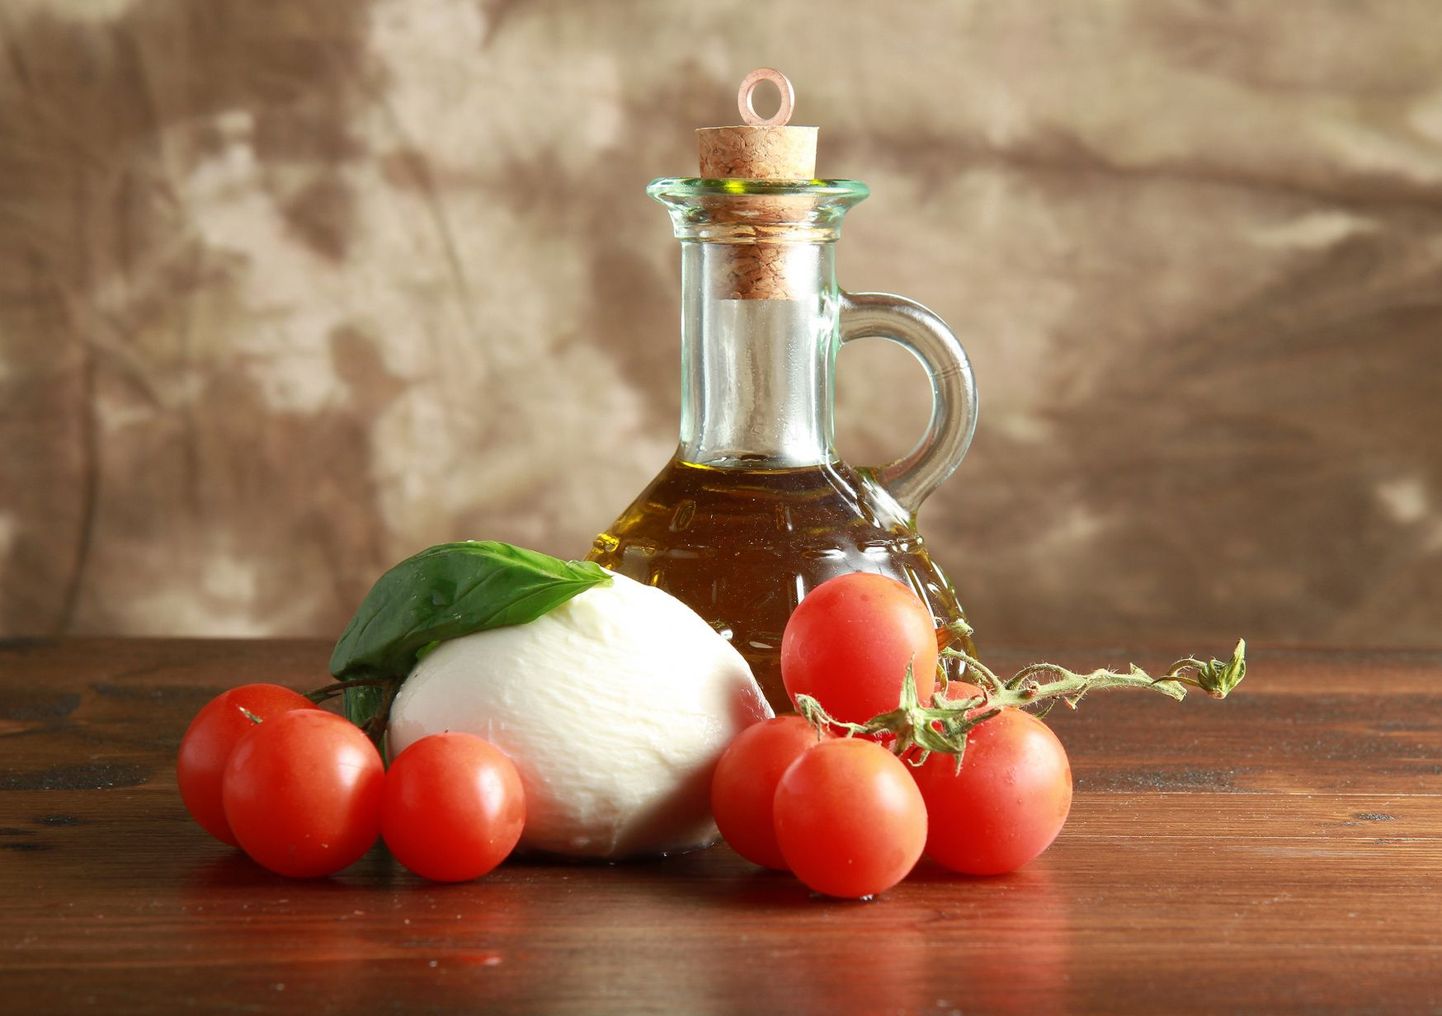 Itaalia oliiviõli ja mozarella juust said Inglismaal külge eriti rasvase toiduaine märgise.